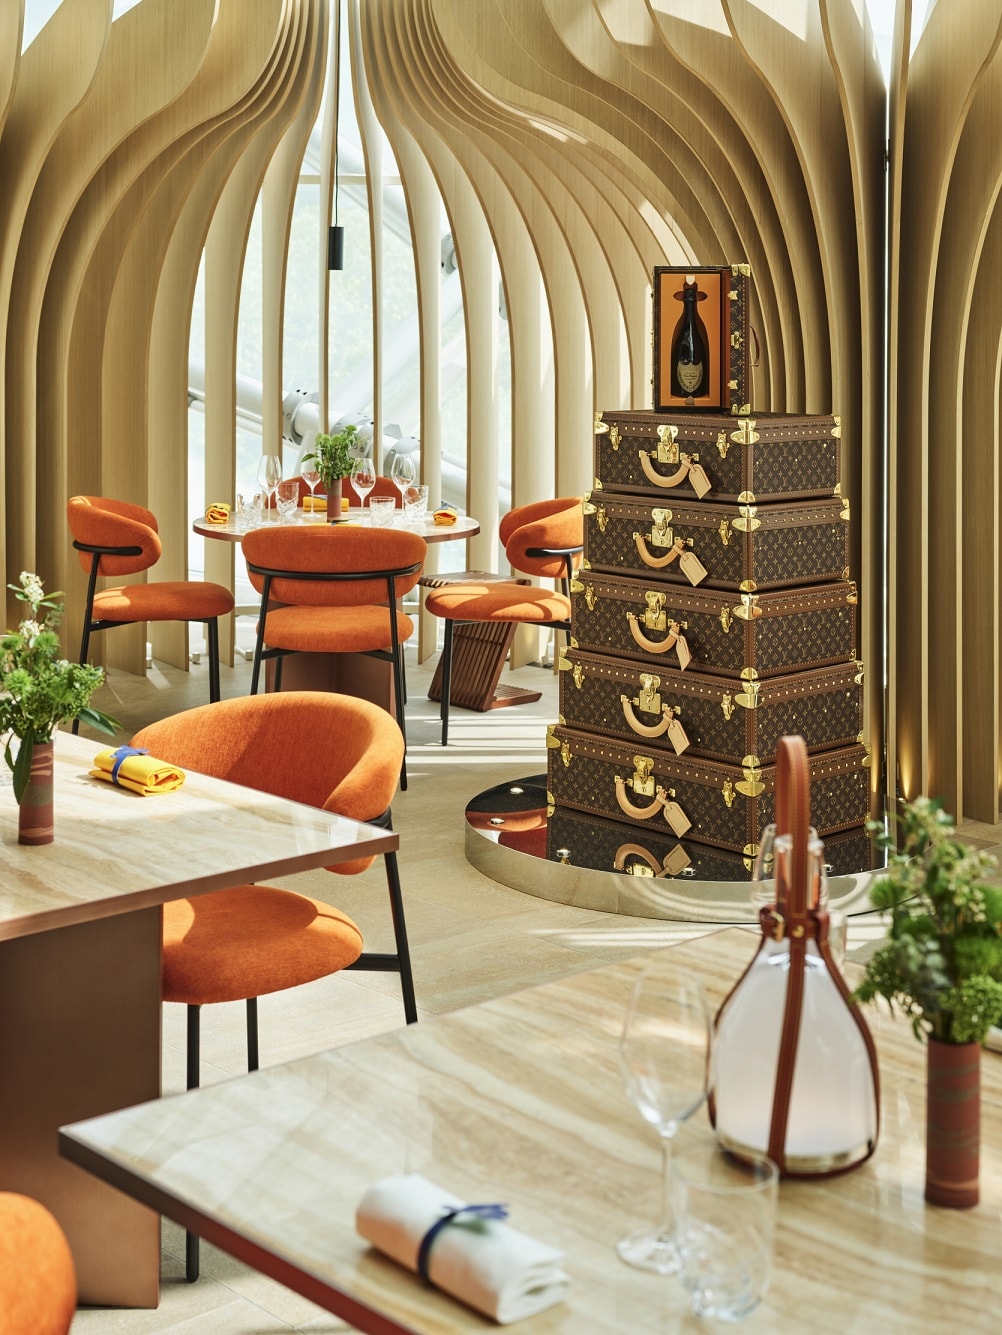 Louis Vuitton 於首爾開設第三間期間限定餐廳「Ikoyi at Louis Vuitton」